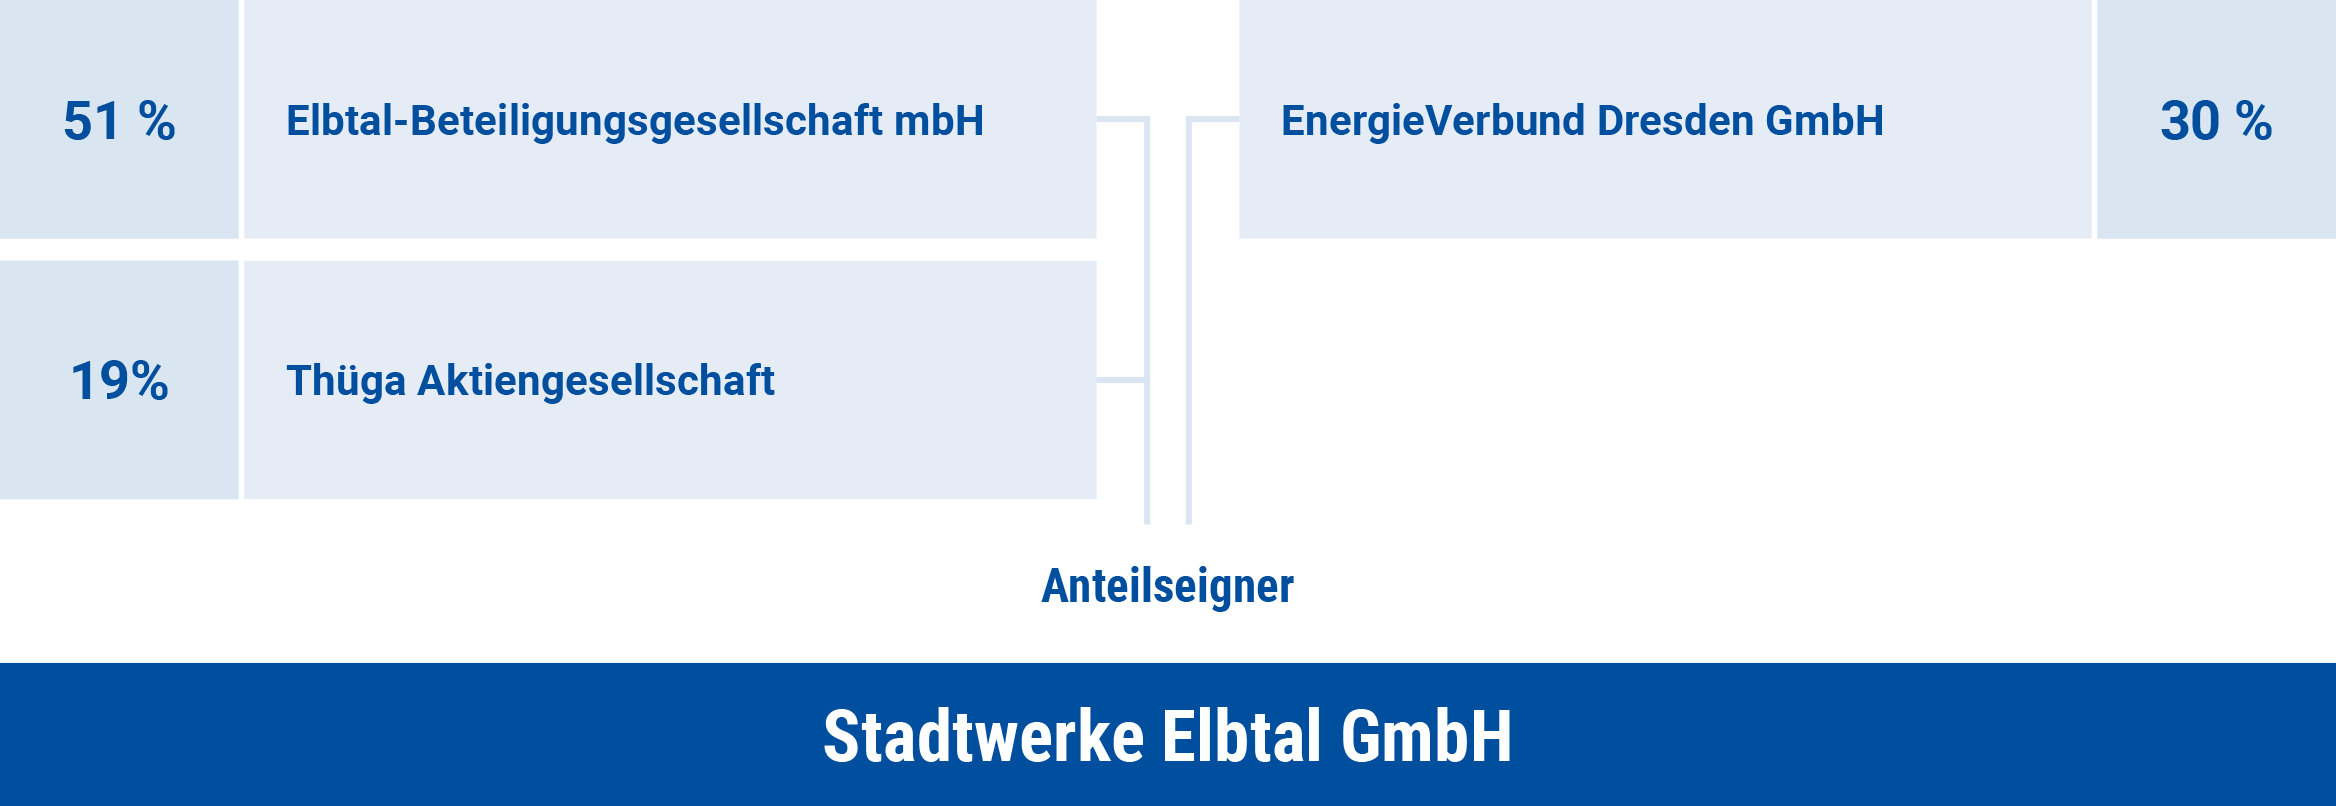 Gesellschaftsstruktur der Stadtwerke Elbtal GmbH